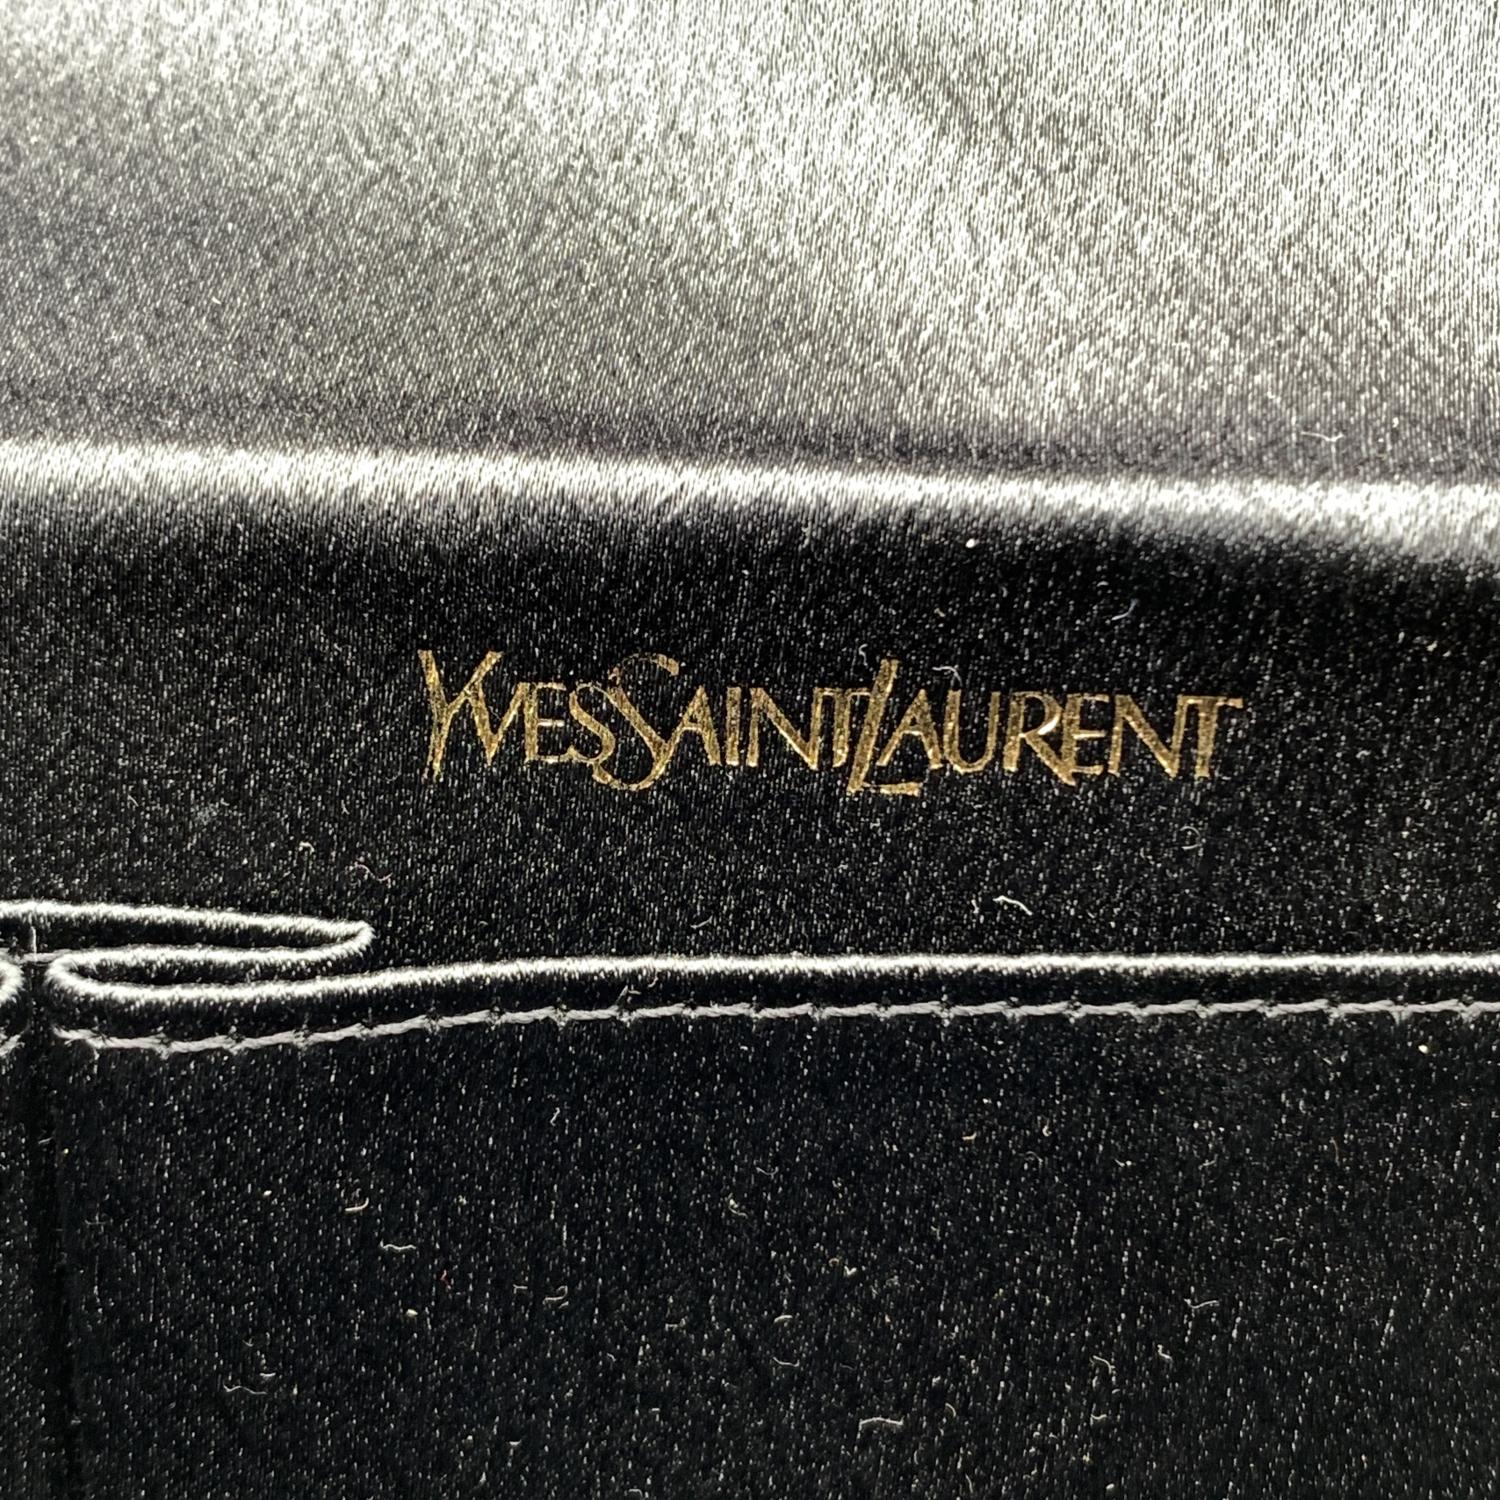 Yves Saint Laurent Vintage Black Satin Clutch Bag Embellished Bow 1